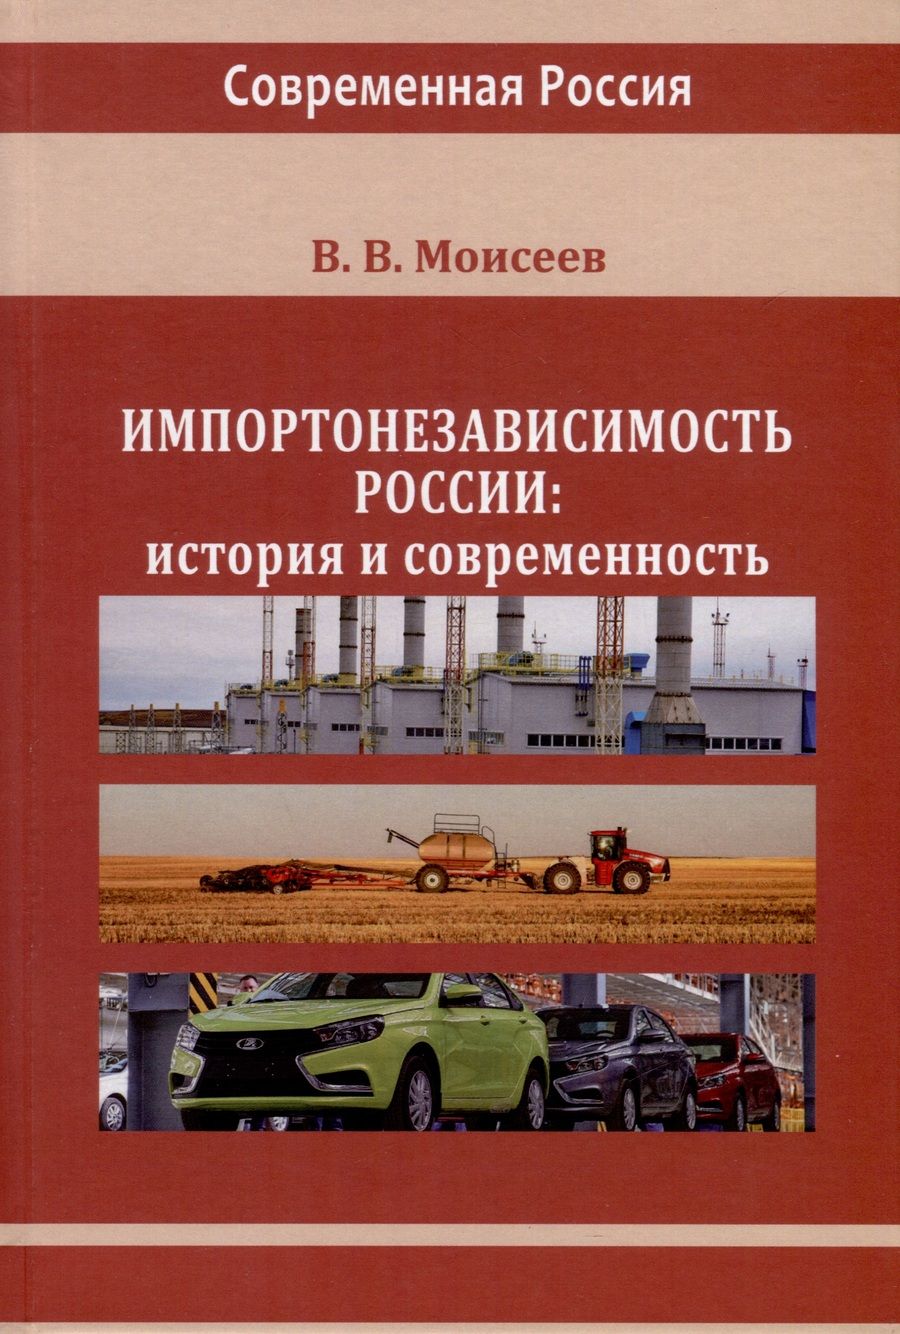 Обложка книги "Моисеев: Импортонезависимость России. История и современность. Монография"